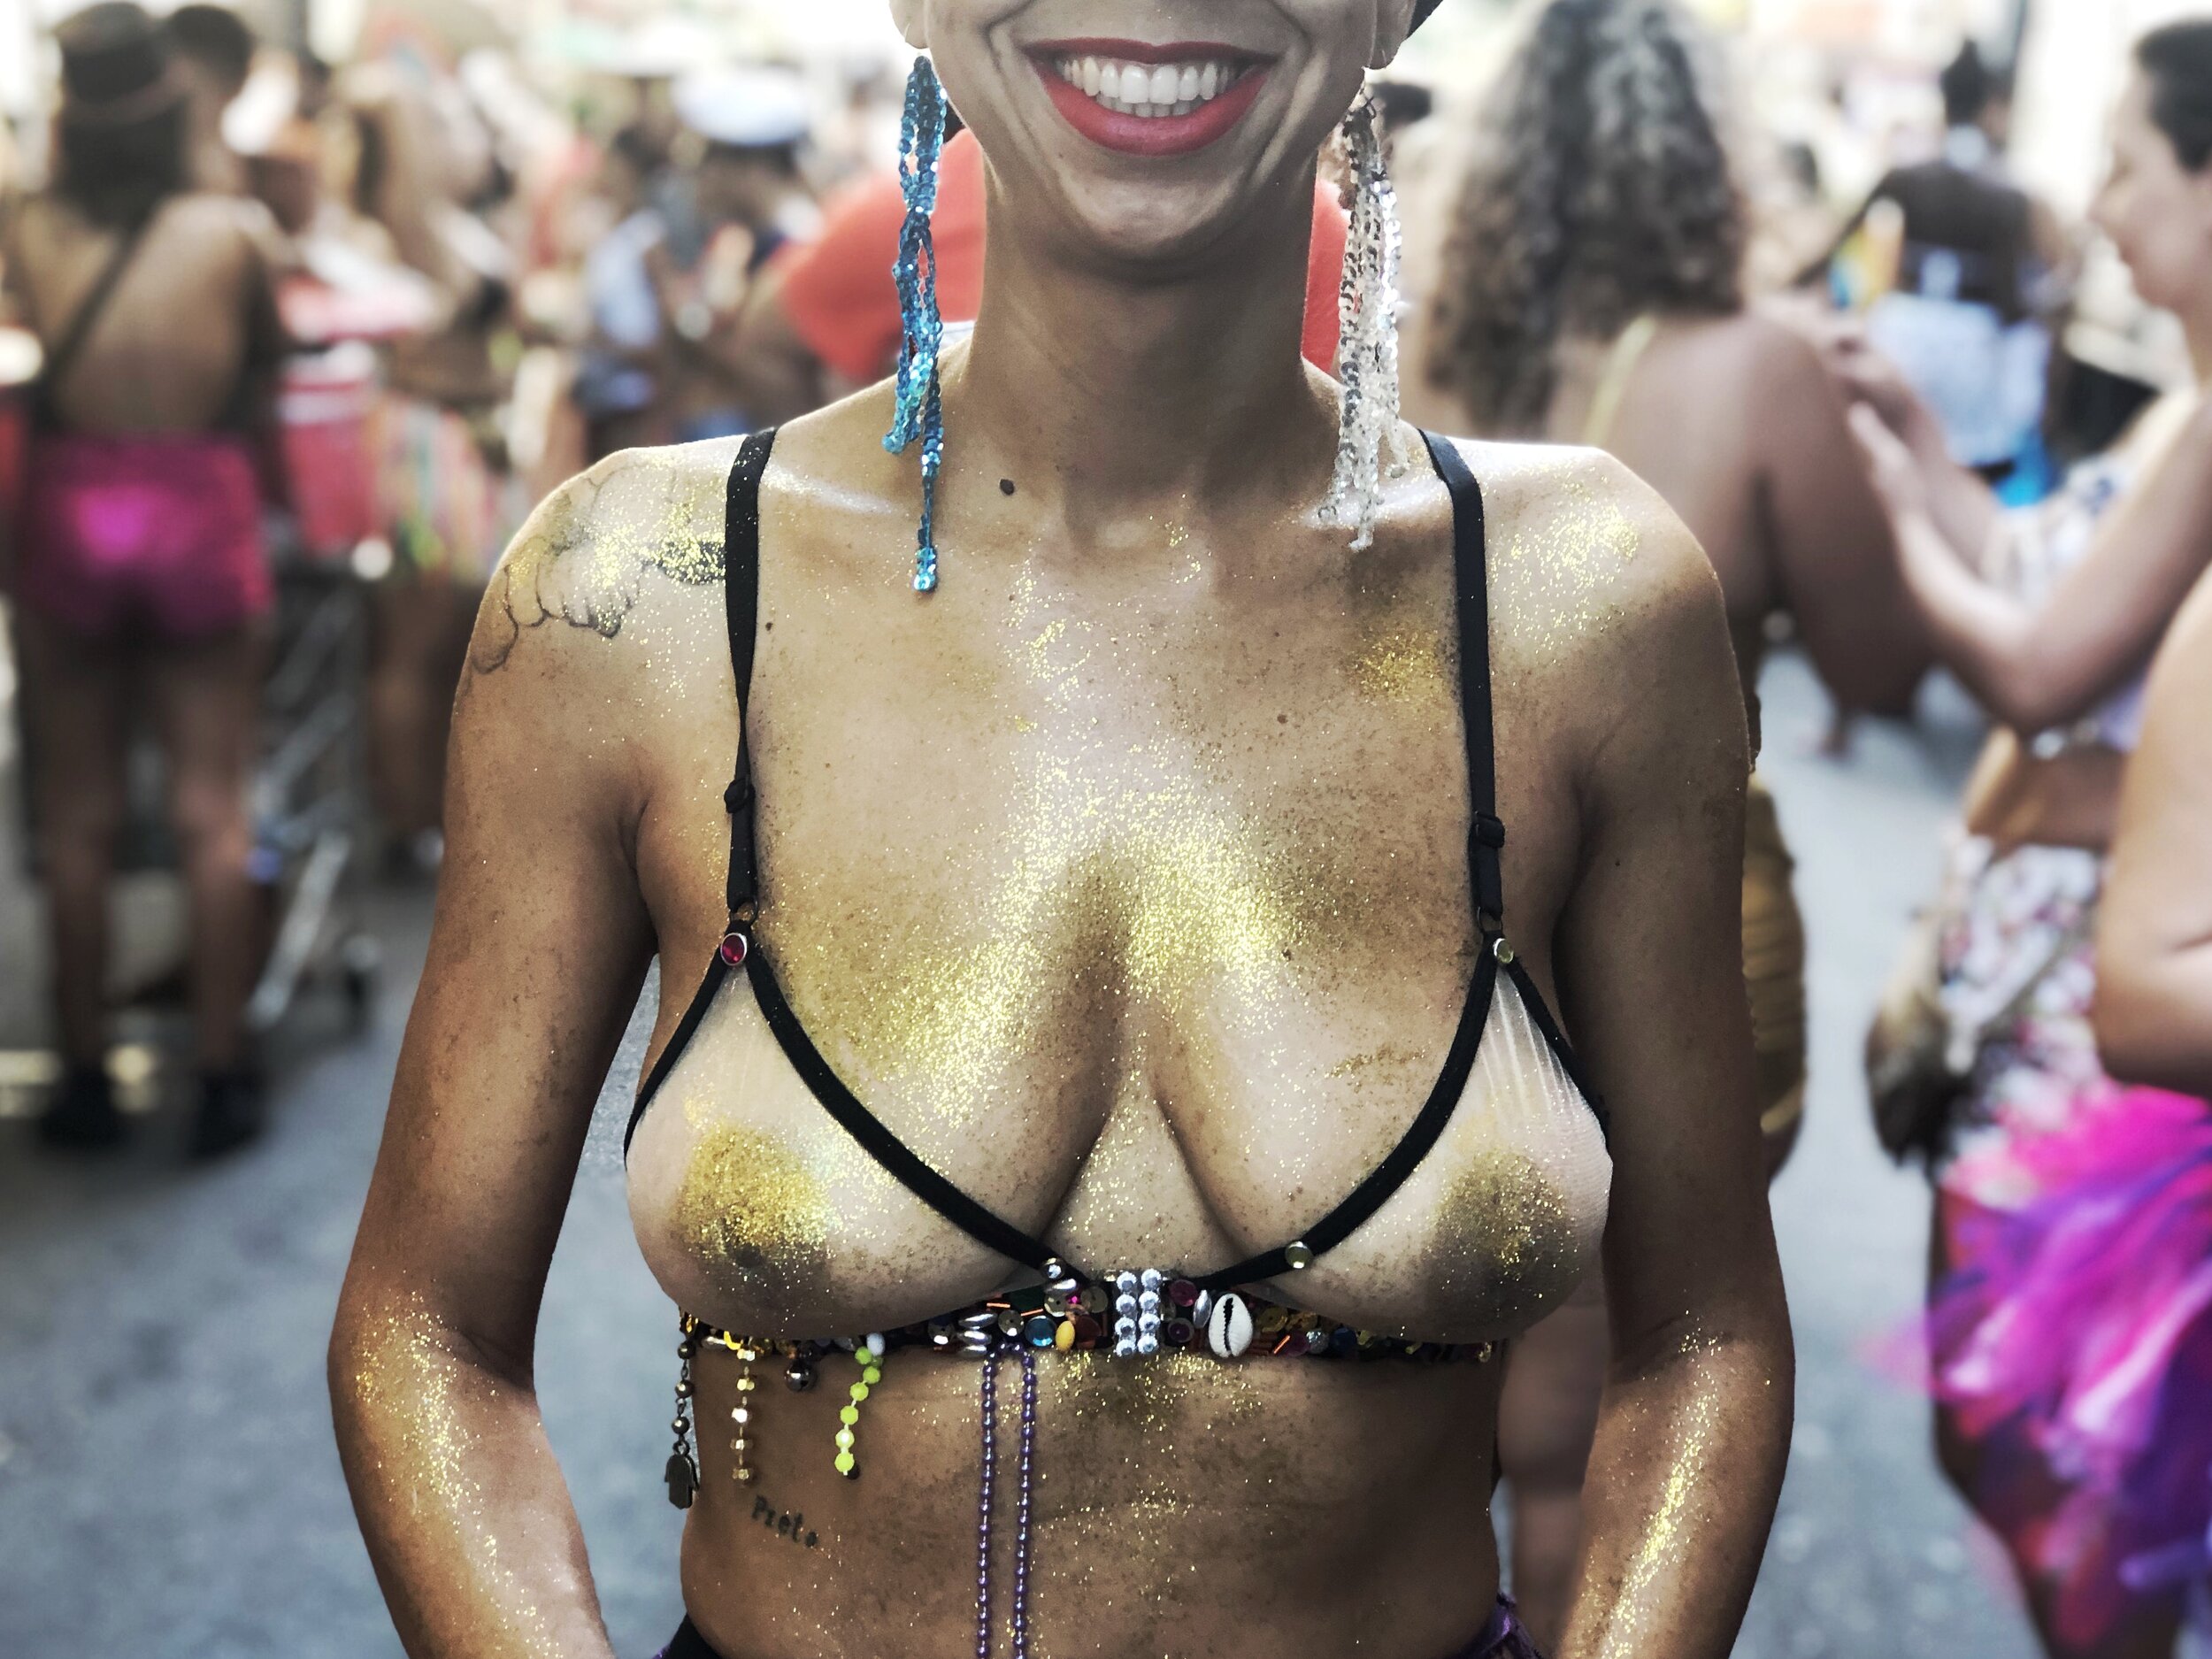  A proposta desse conjunto de fotos, feitas durante o carnaval de rua na cidade do Rio de Janeiro em 2019, é questionar a forma como a sociedade brasileira olha para os corpos das mulheres, os objetifica, sexualiza, taxa e censura.  